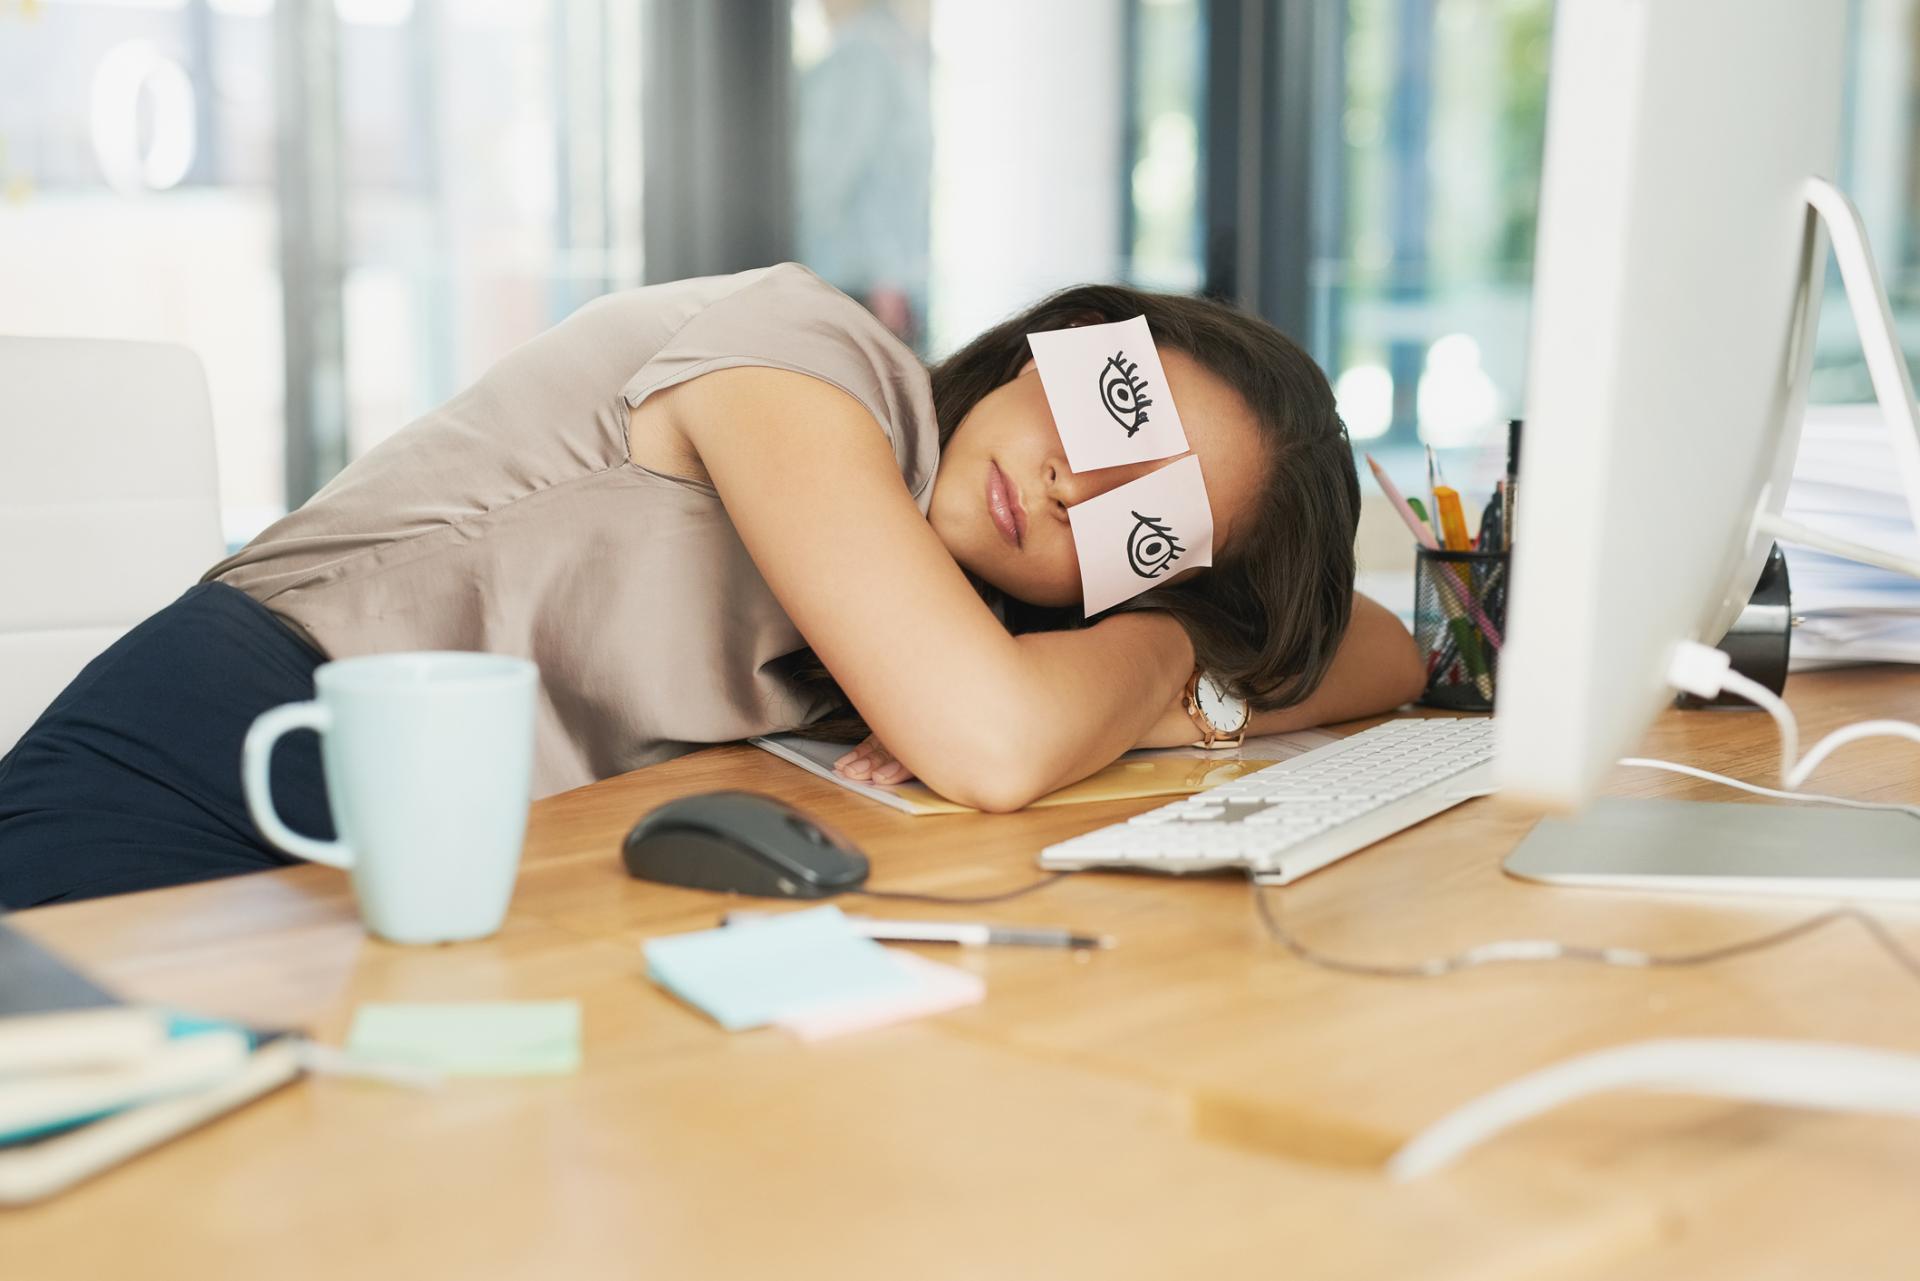 O efeito sobre o cérebro de soneca durante o dia, segundo ciência.